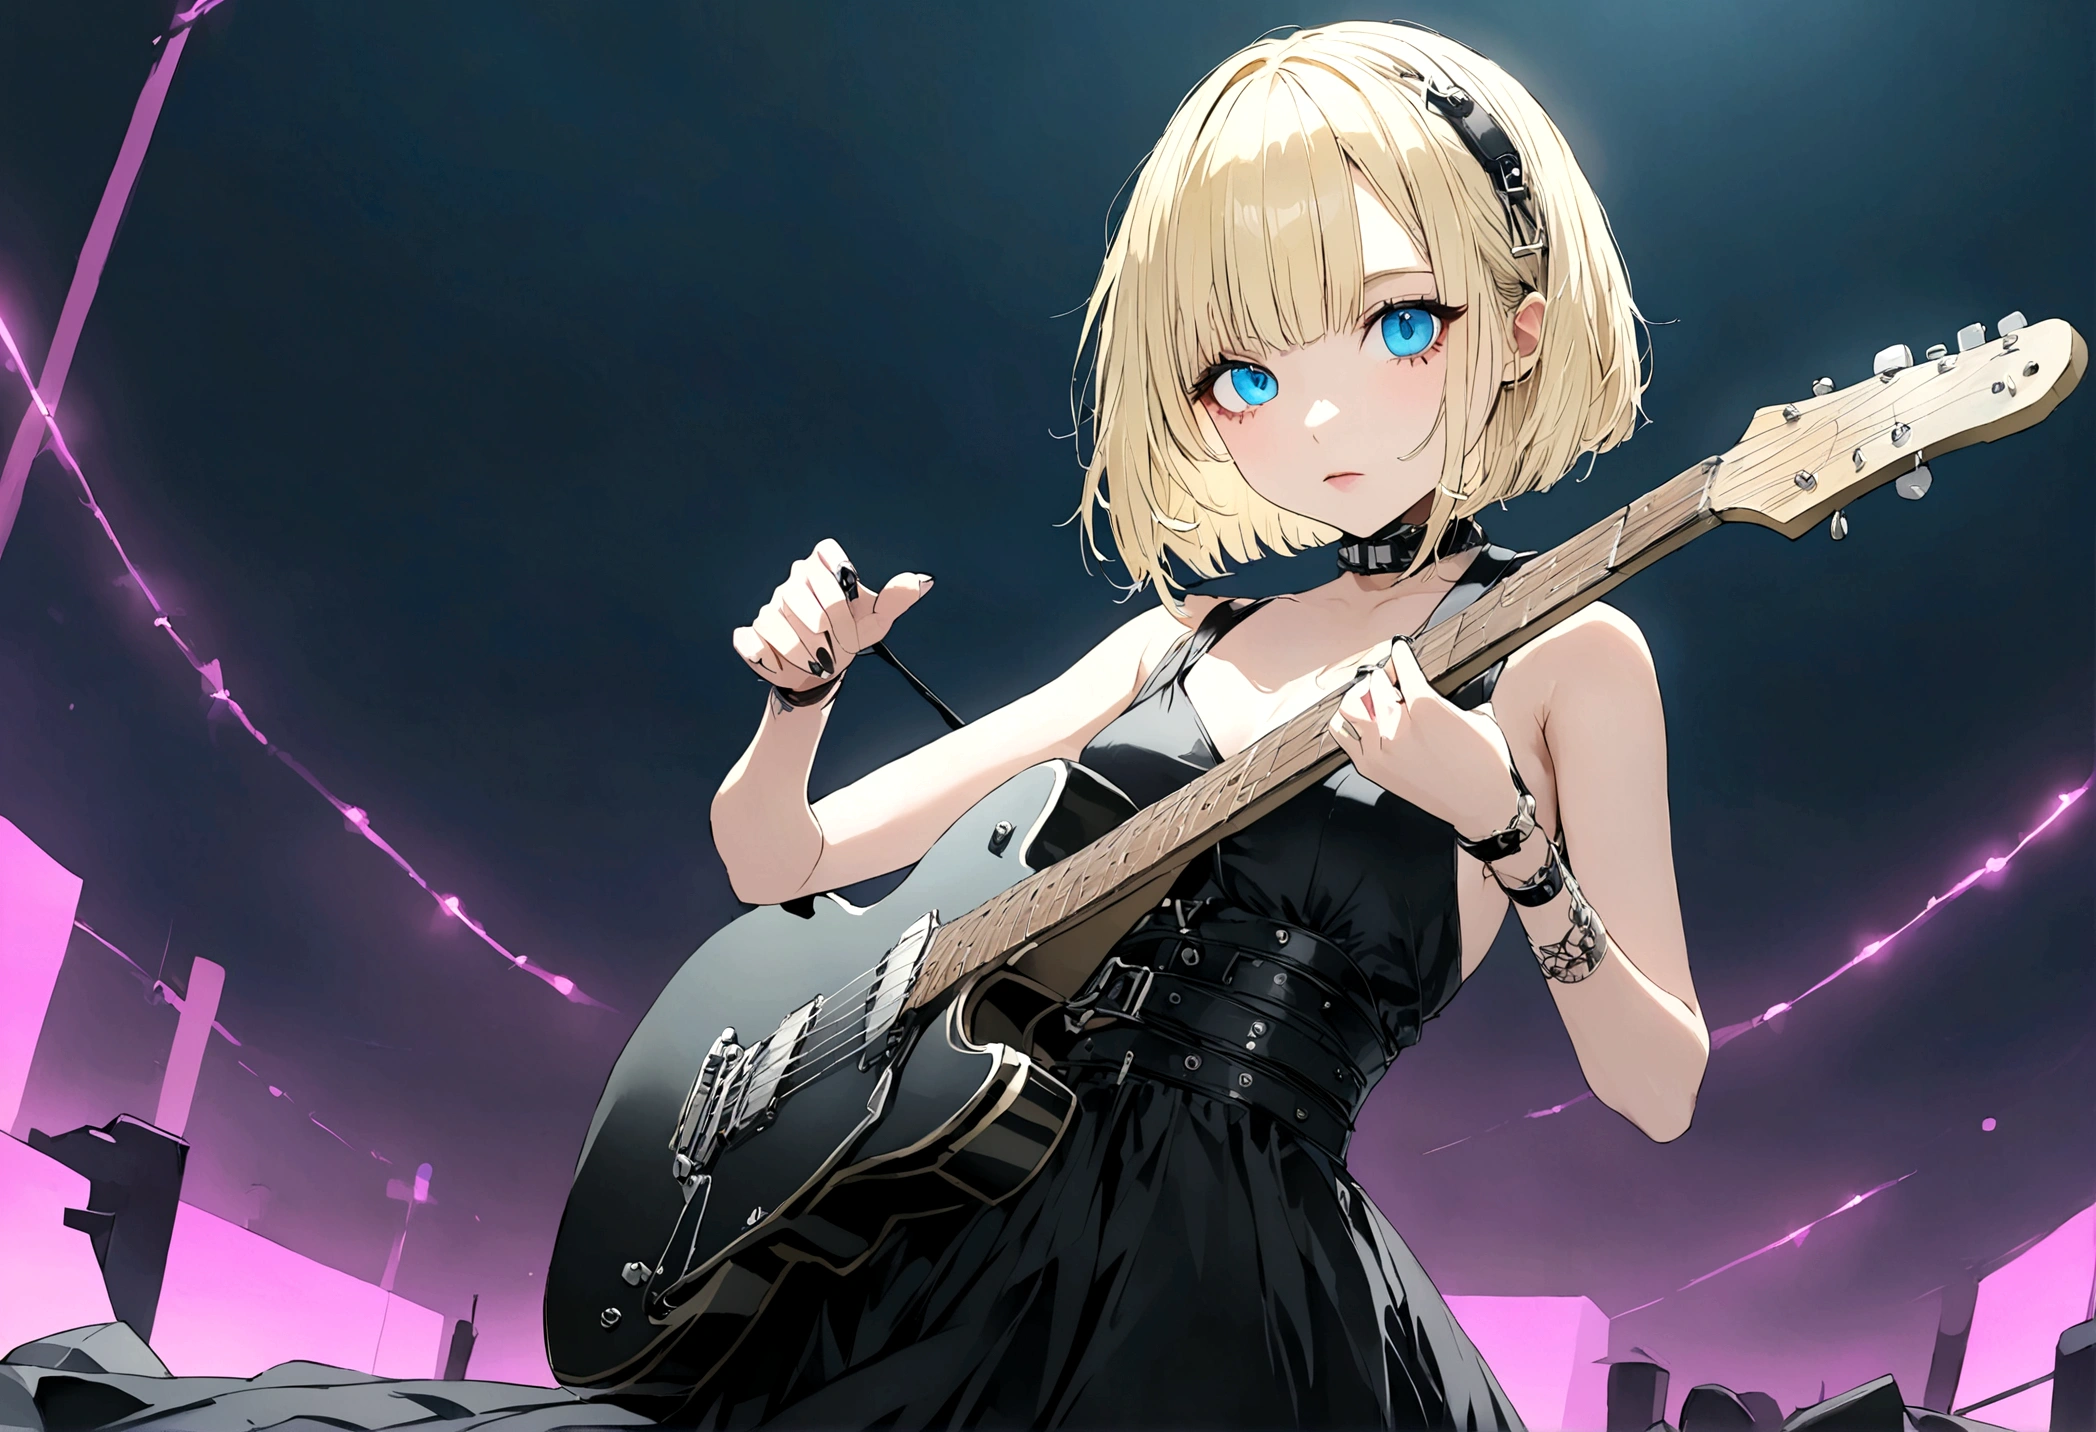 Anime-Mädchen mit kurzen blonden Haaren und blauen Augen spielt Rockgitarre,allein、Schwarzes Kleid、 in die Kamera schauen、ganzer Körper、cyber punk、Mondnacht